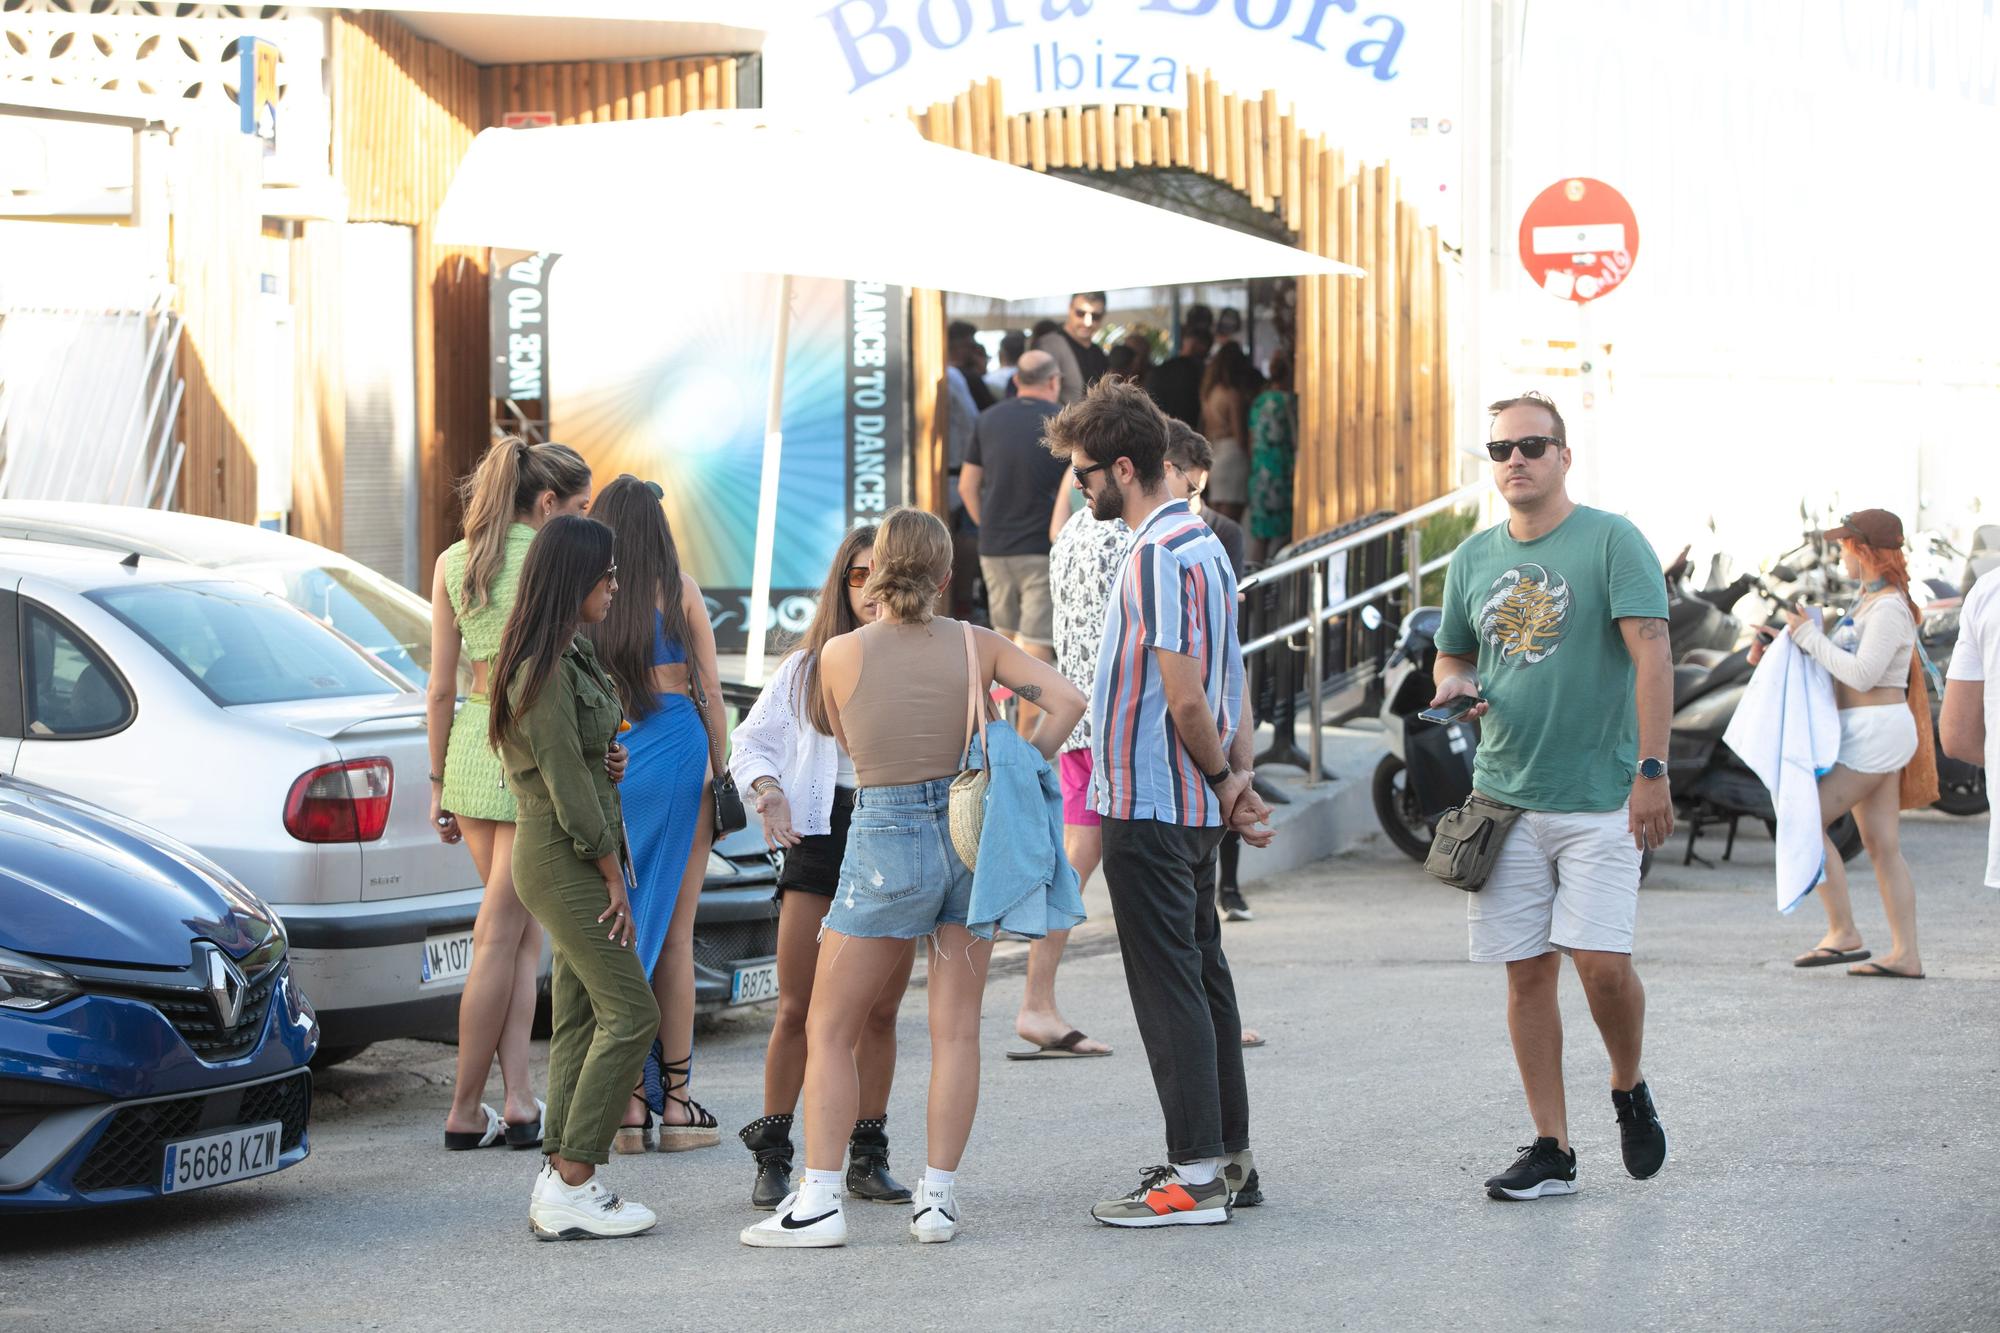 Así fue el cierre definitivo de la discoteca Bora Bora en Ibiza tras 40 años